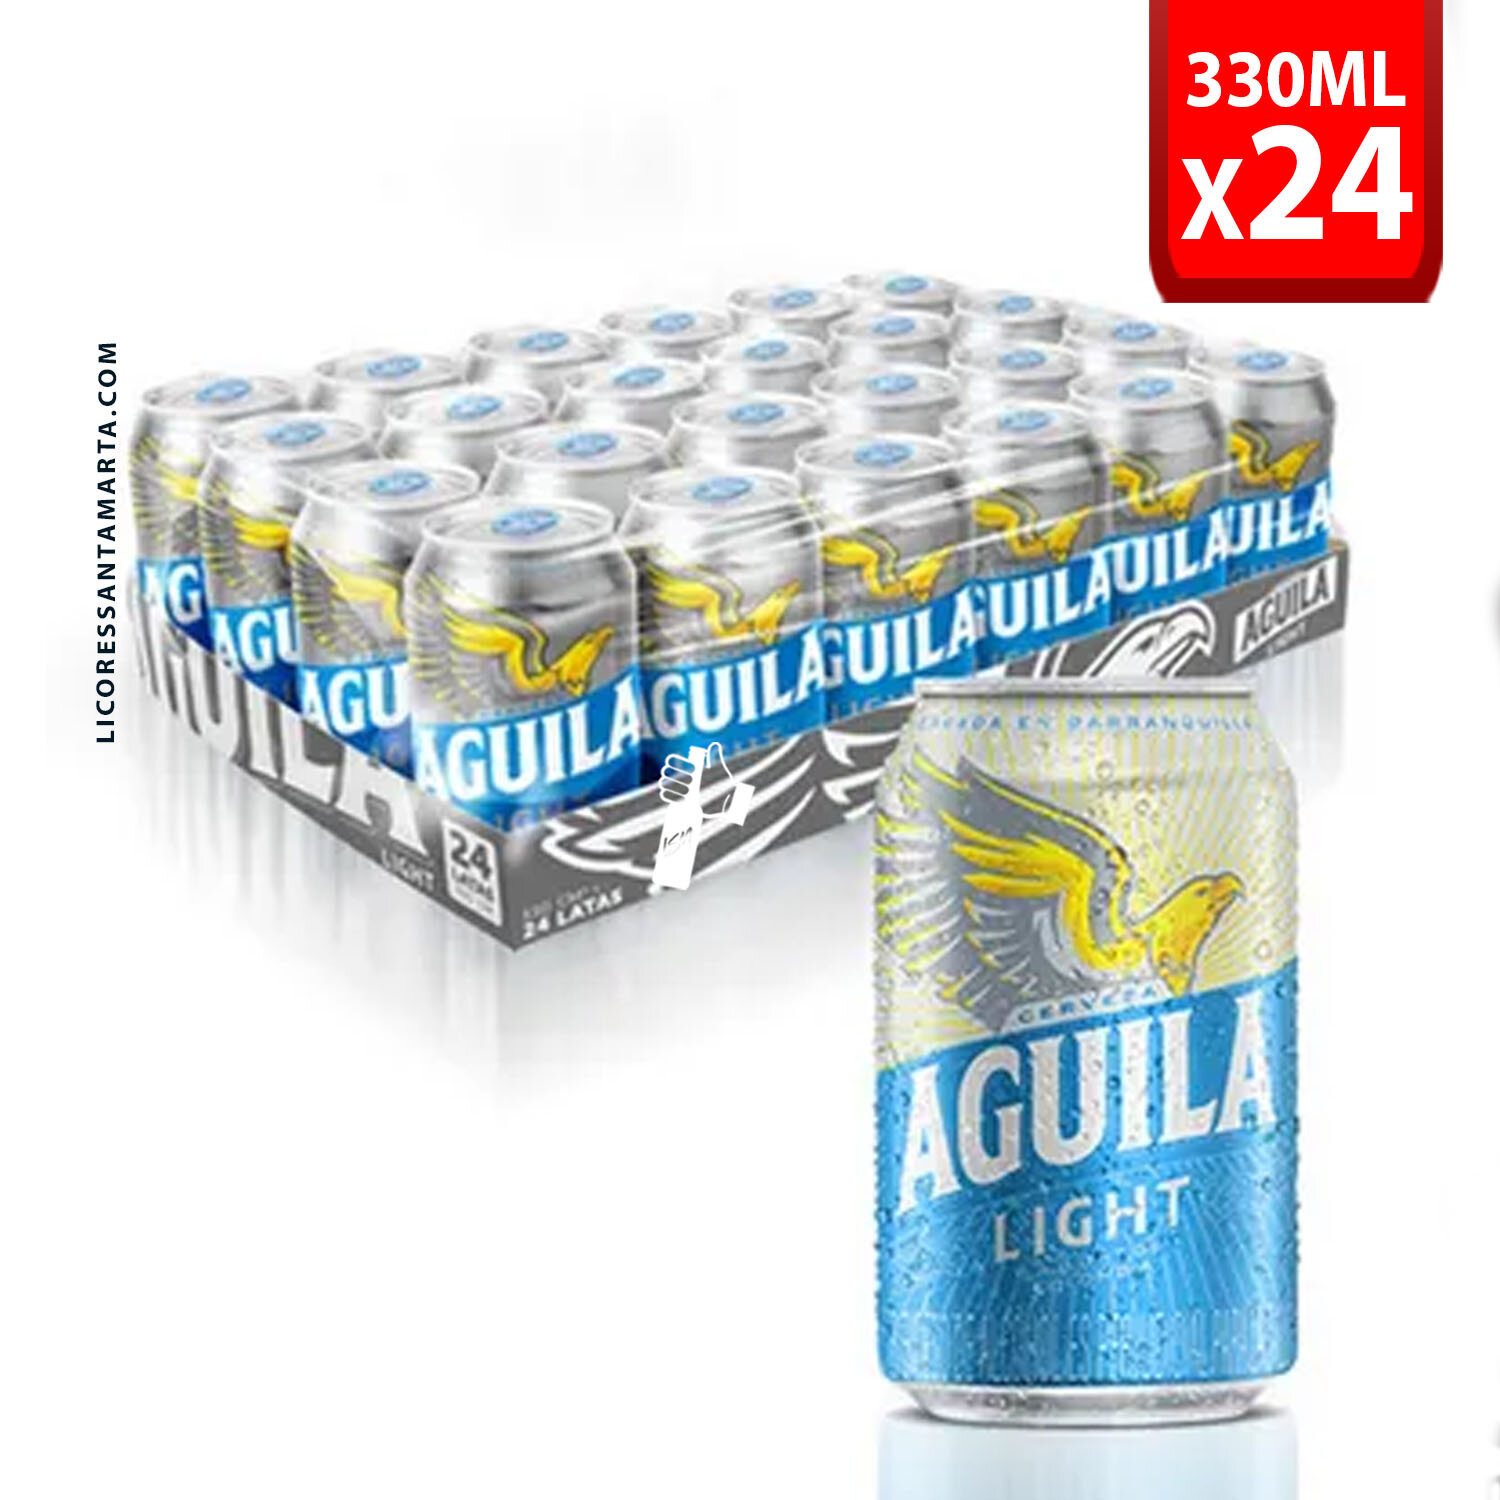 Aguila light lata 330*24